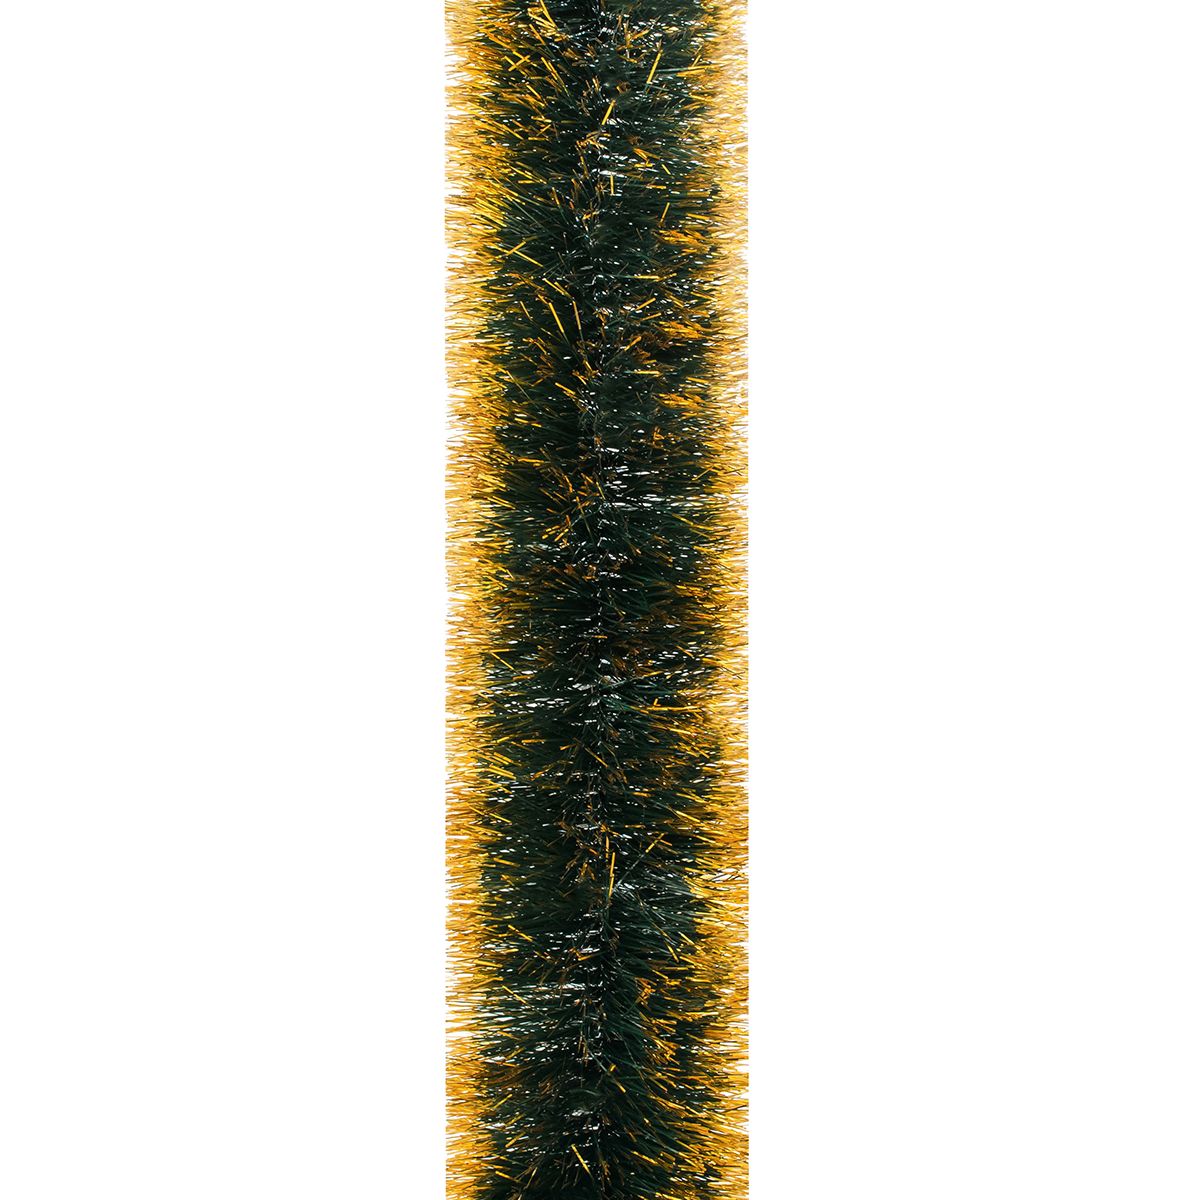 Мишура Novogod'ko 10 см 3 м зеленая матовая с золотыми кончиками (980322) - фото 1